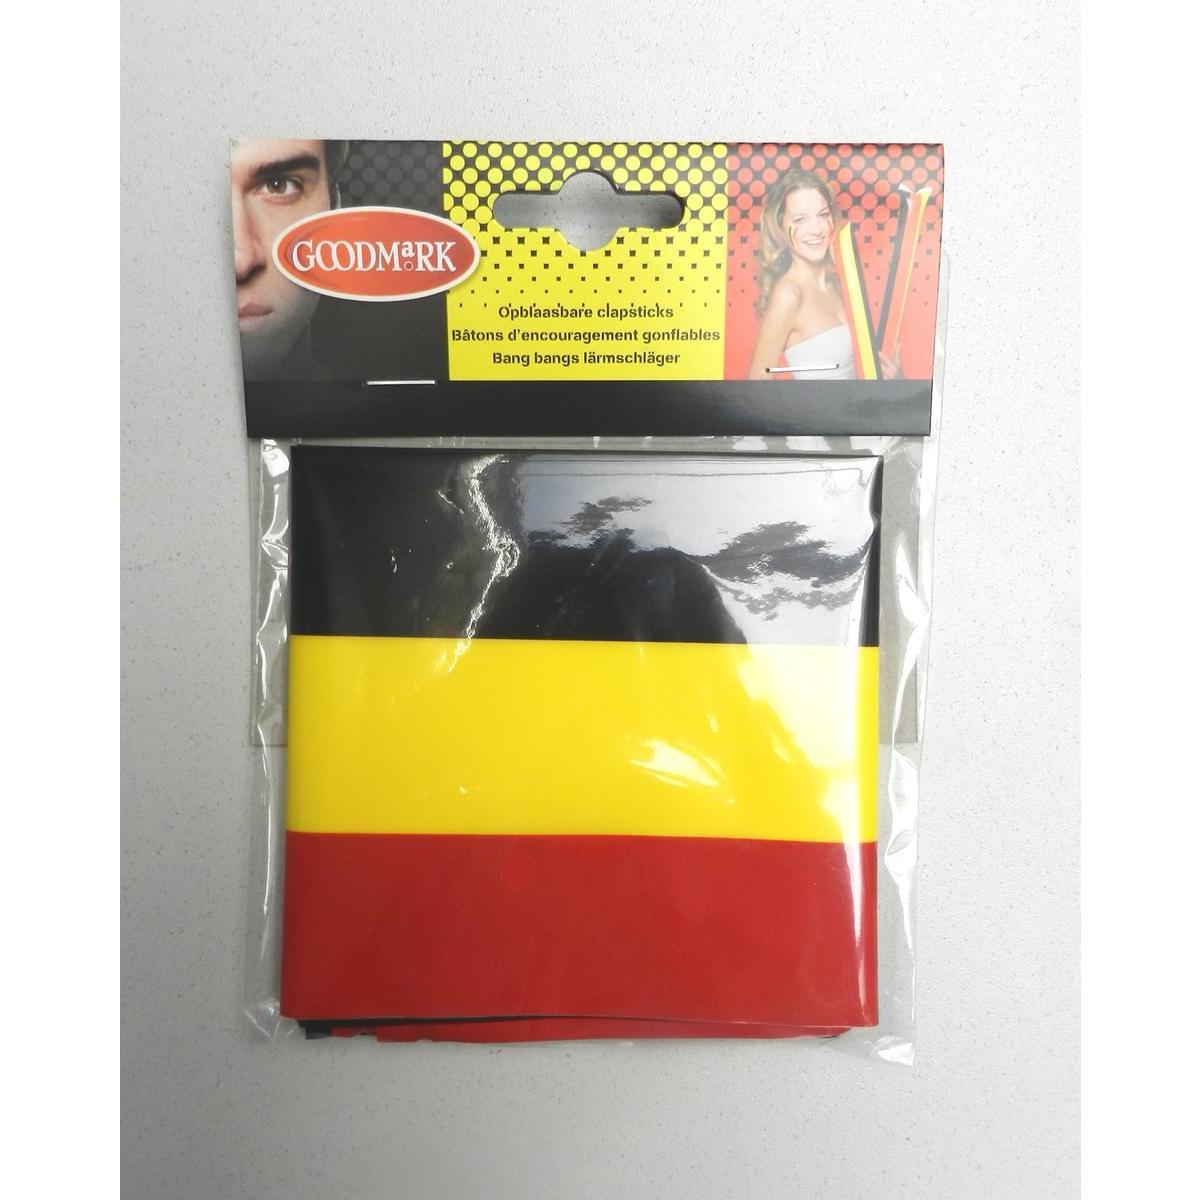 2 clap-clap supporter de la Belgique - 25 x 56 x 20 cm - Noir, jaune, rouge